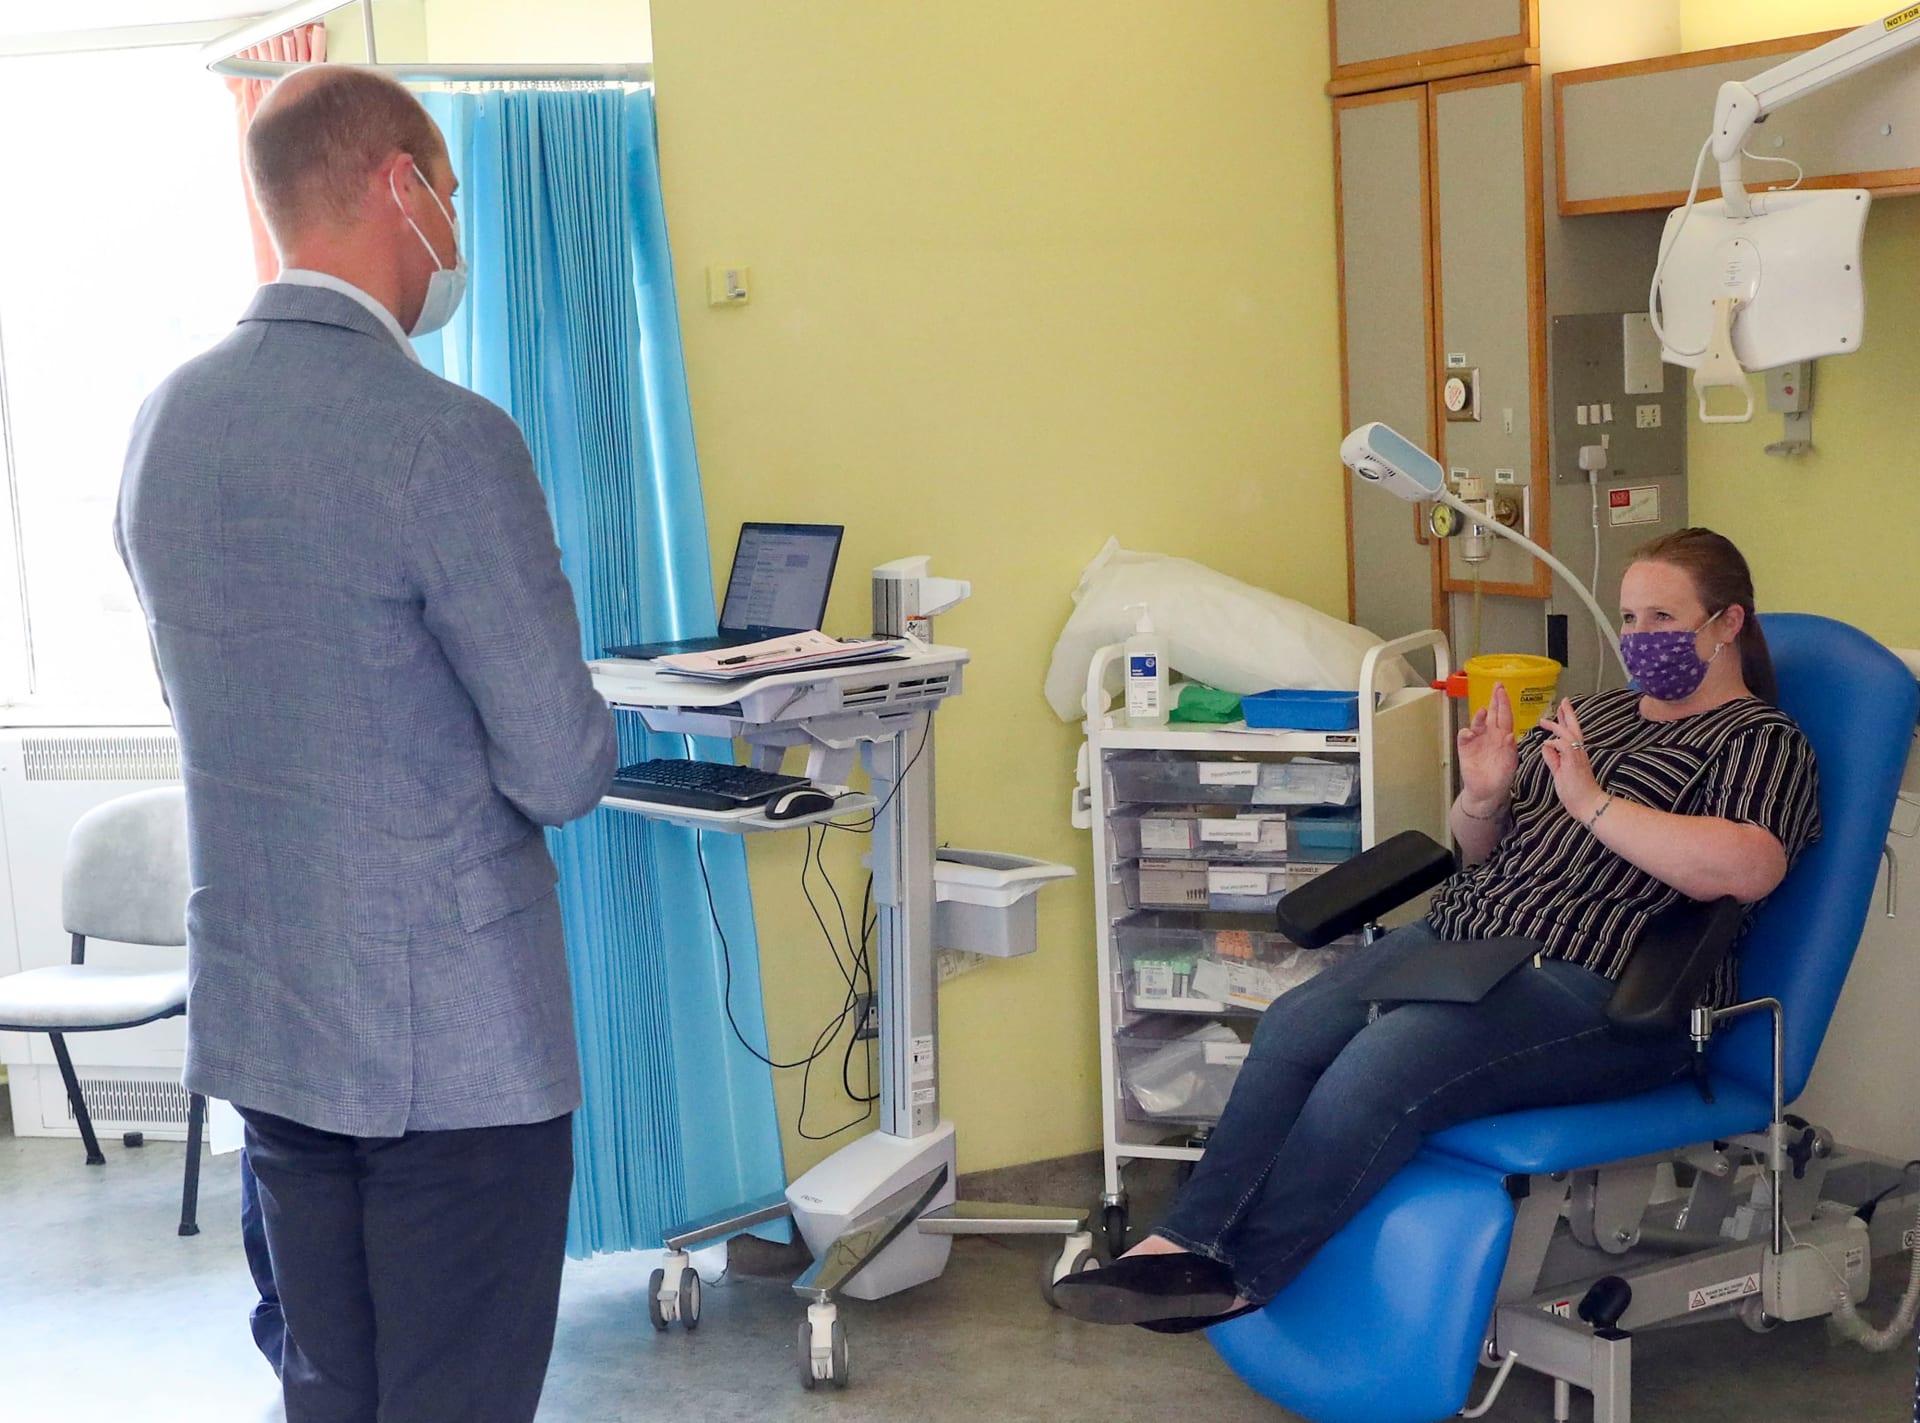 الأمير وليام يزور المشاركين في تجارب لقاح كورونا السريرية في مختبرات أوكسفورد